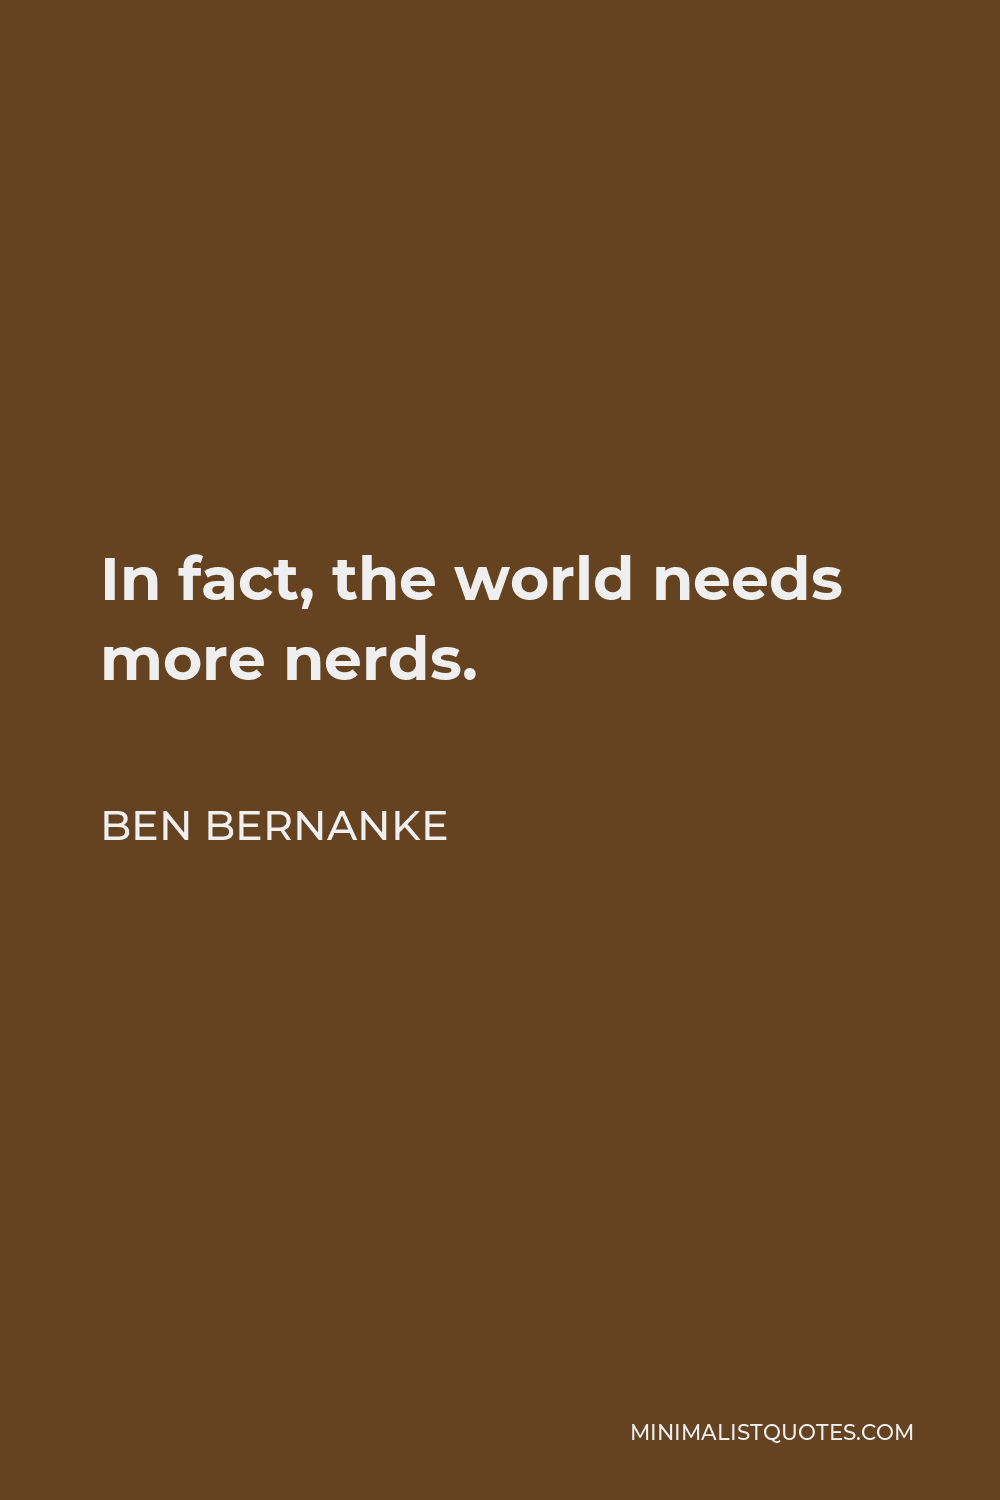 Ben Bernanke Quote - In fact, the world needs more nerds.